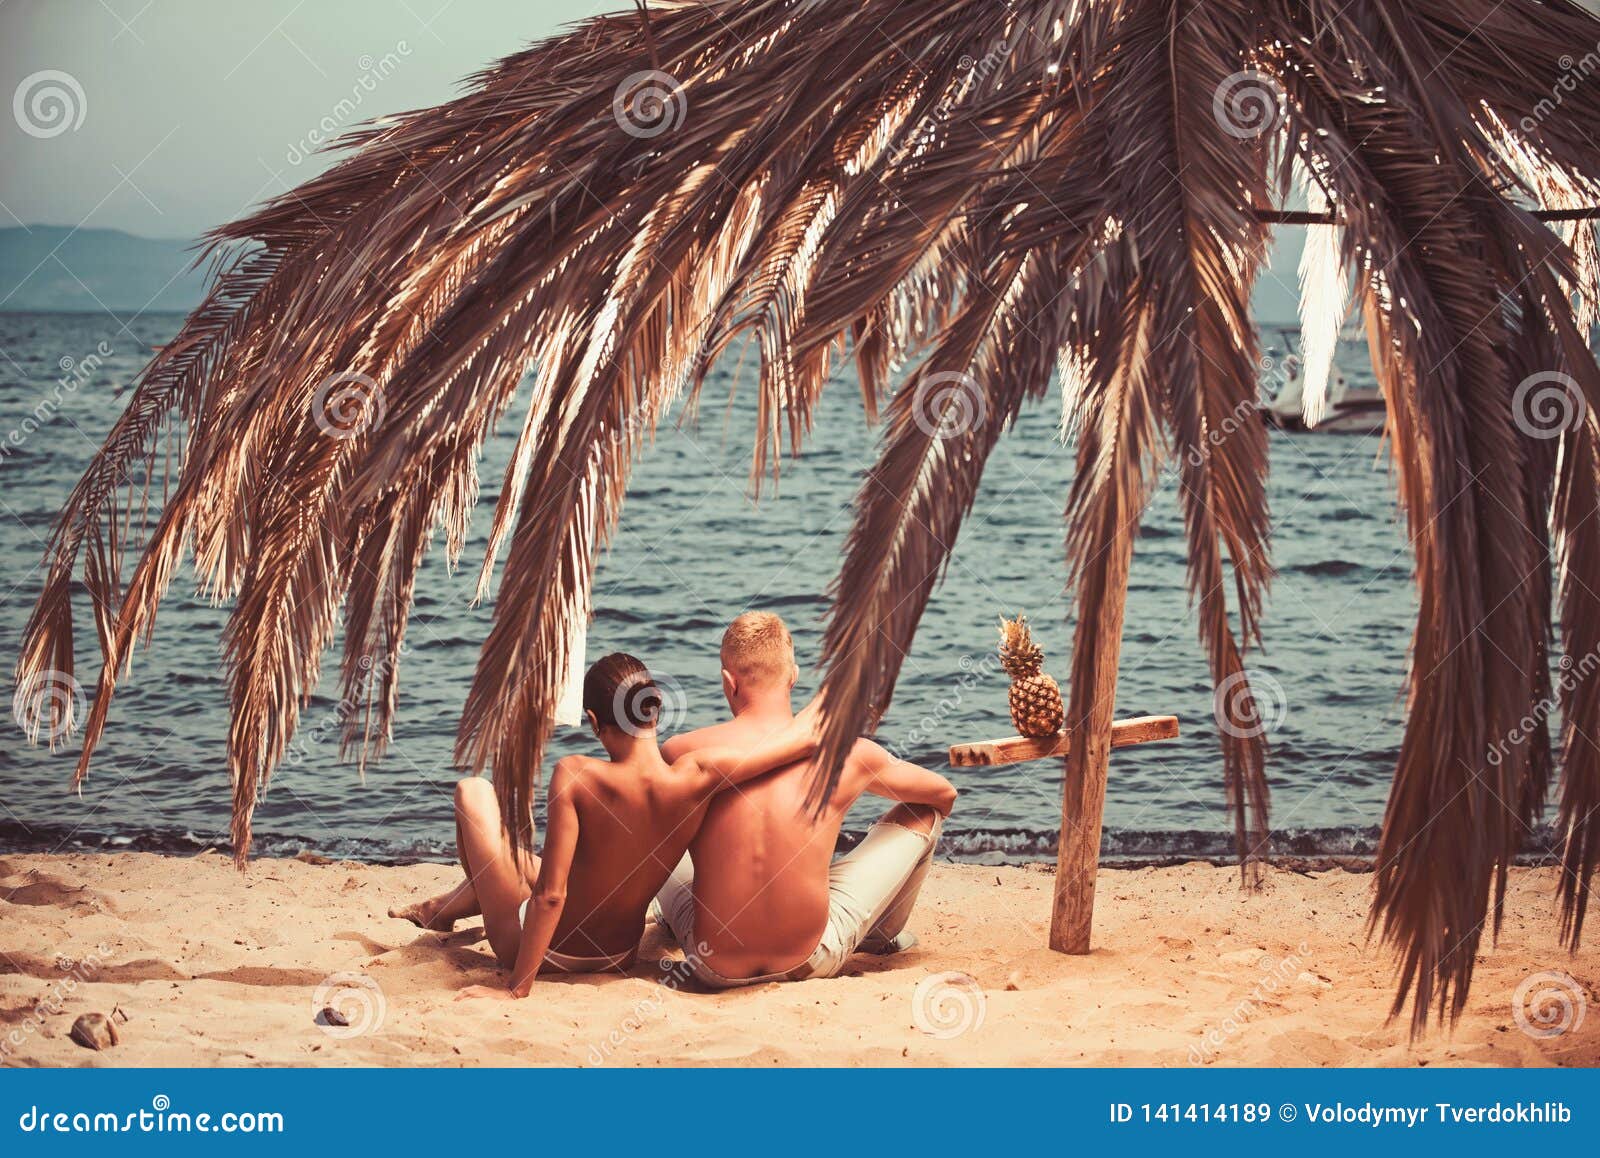 Nude Beach Lover Stock Photos pic